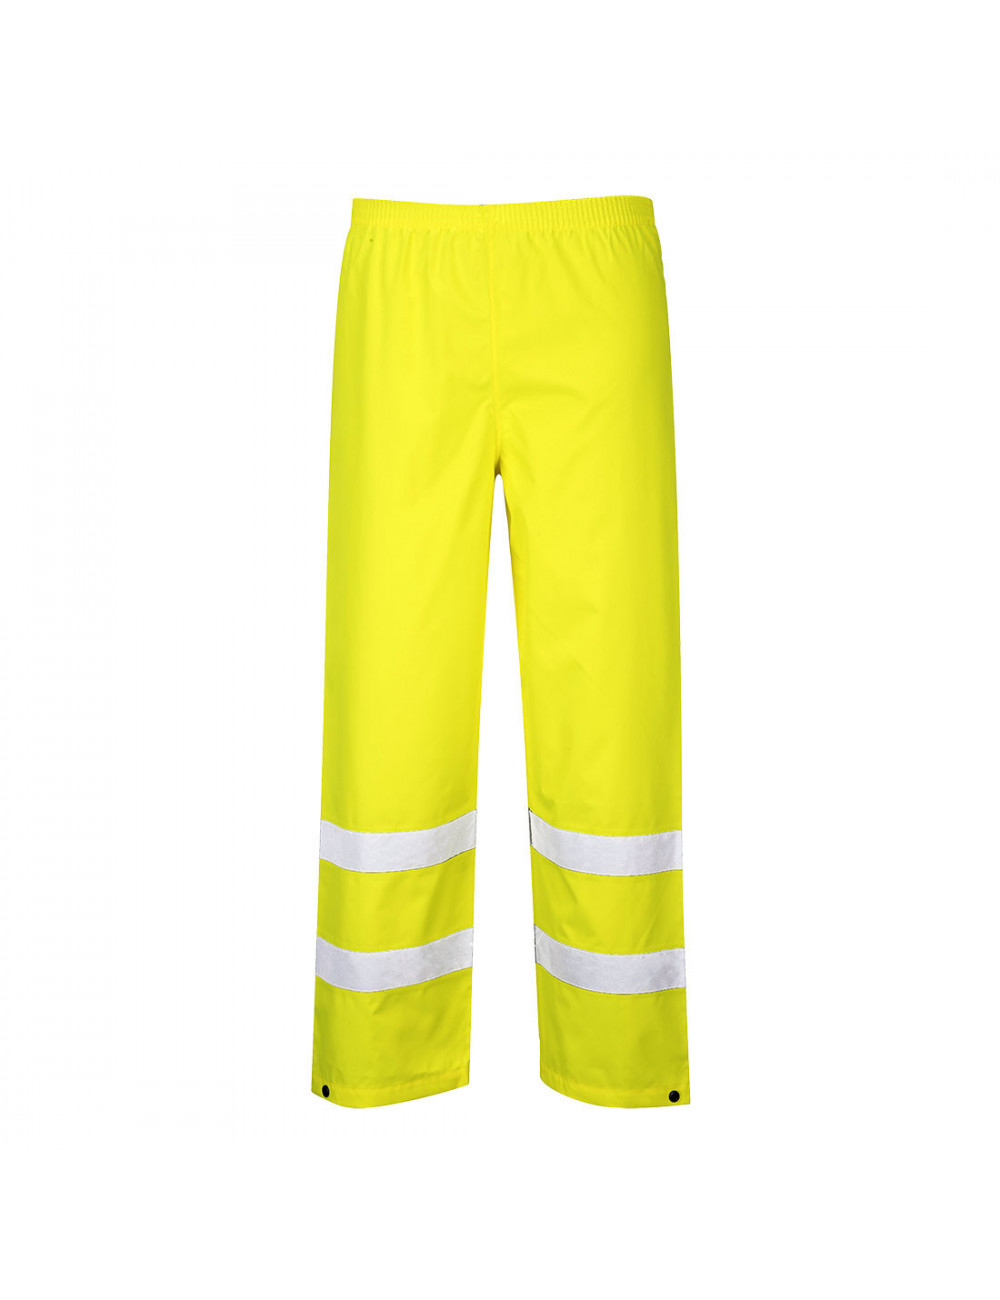 Spodnie ostrzegawcze traffic żółty tall Portwest